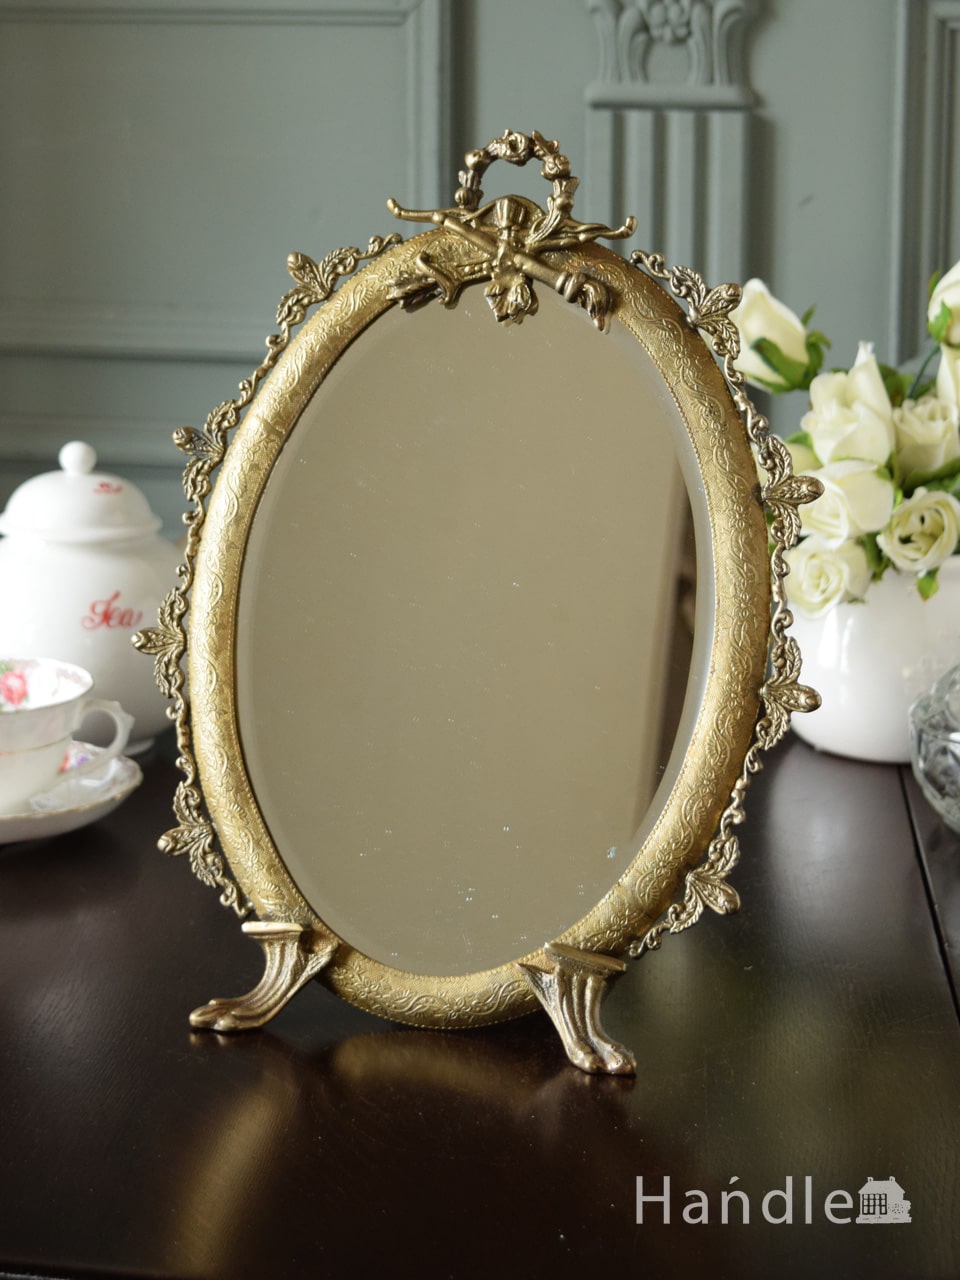 アンティーク調のおしゃれな鏡、華やかな装飾が美しいスタンドミラー(ゴールド) (n21-034)